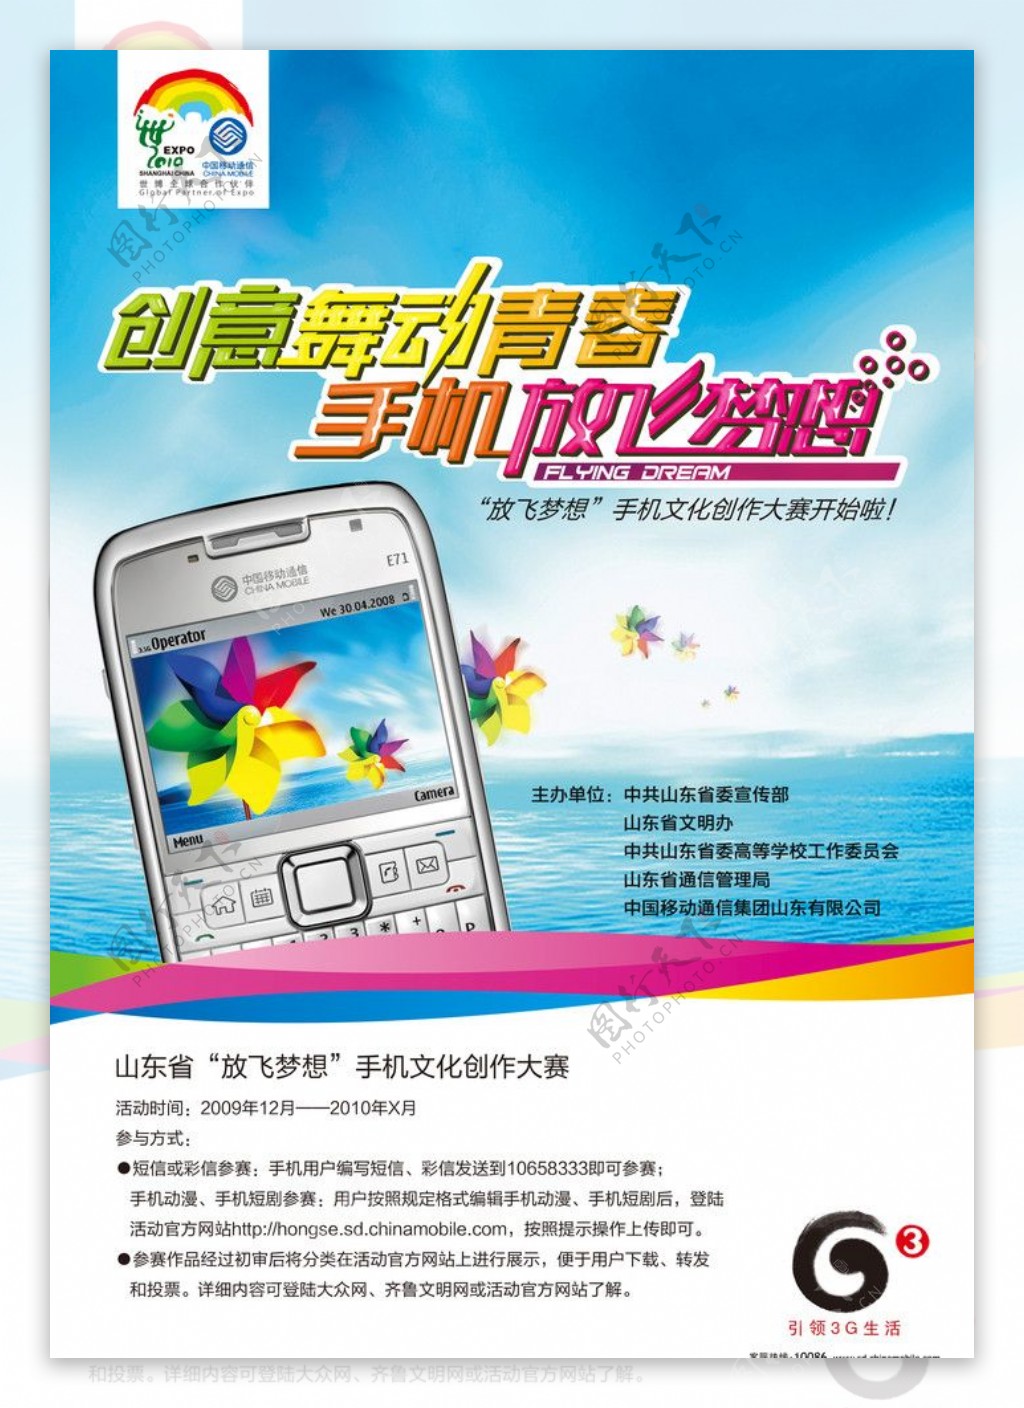 中国移动3G创意舞动青春手机放飞梦想公益海报字体变形分出品15966692159图片